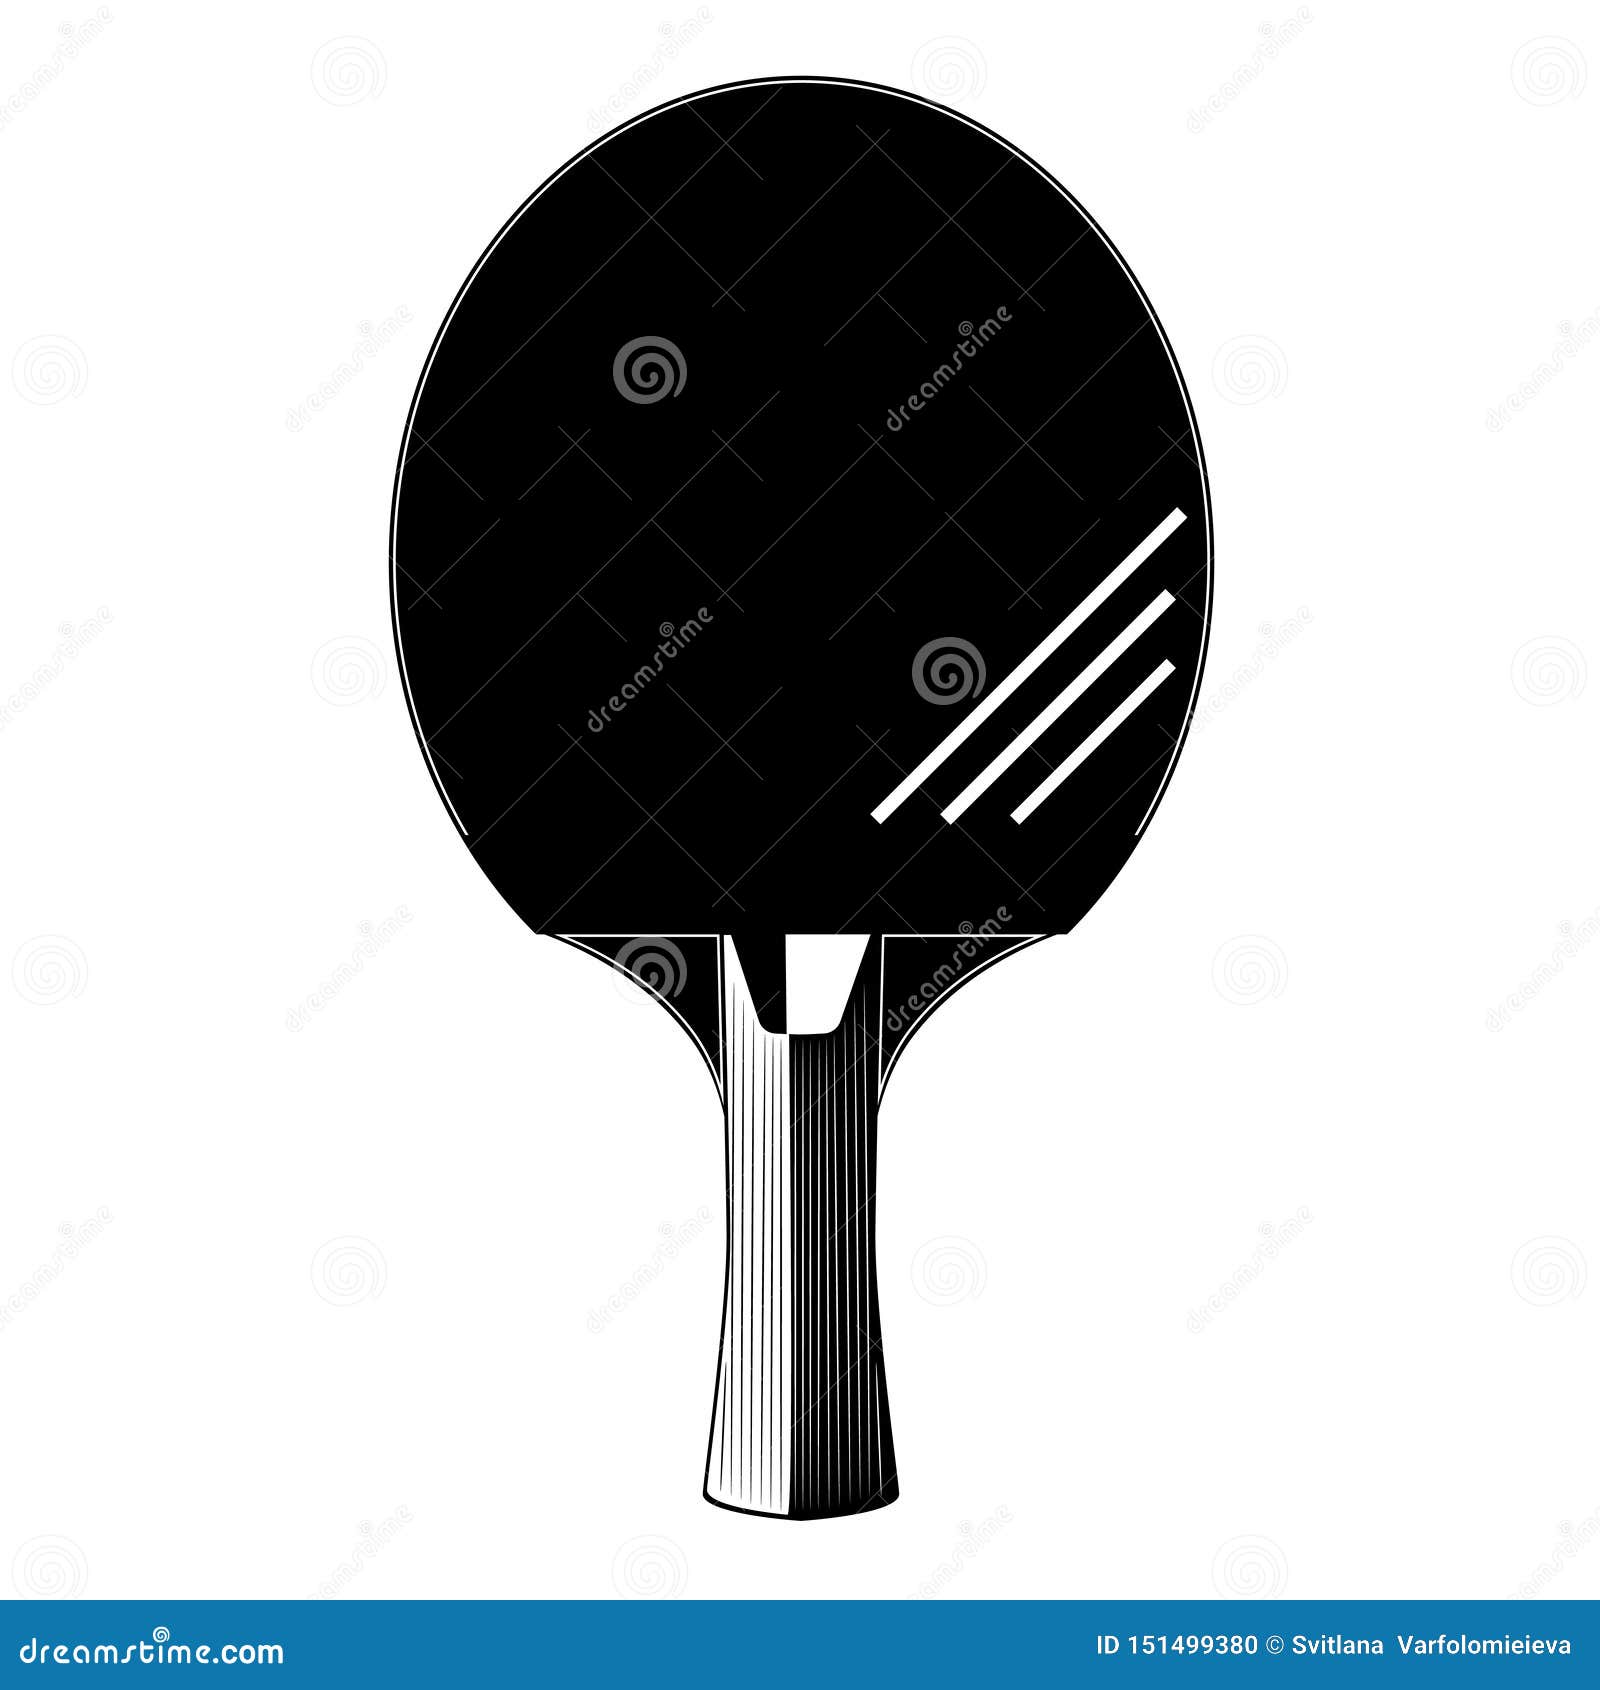 Table De Ping-pong Racket Vectoriel Boule Couverture Grille Illustration de  Vecteur - Illustration du table, sports: 254363284